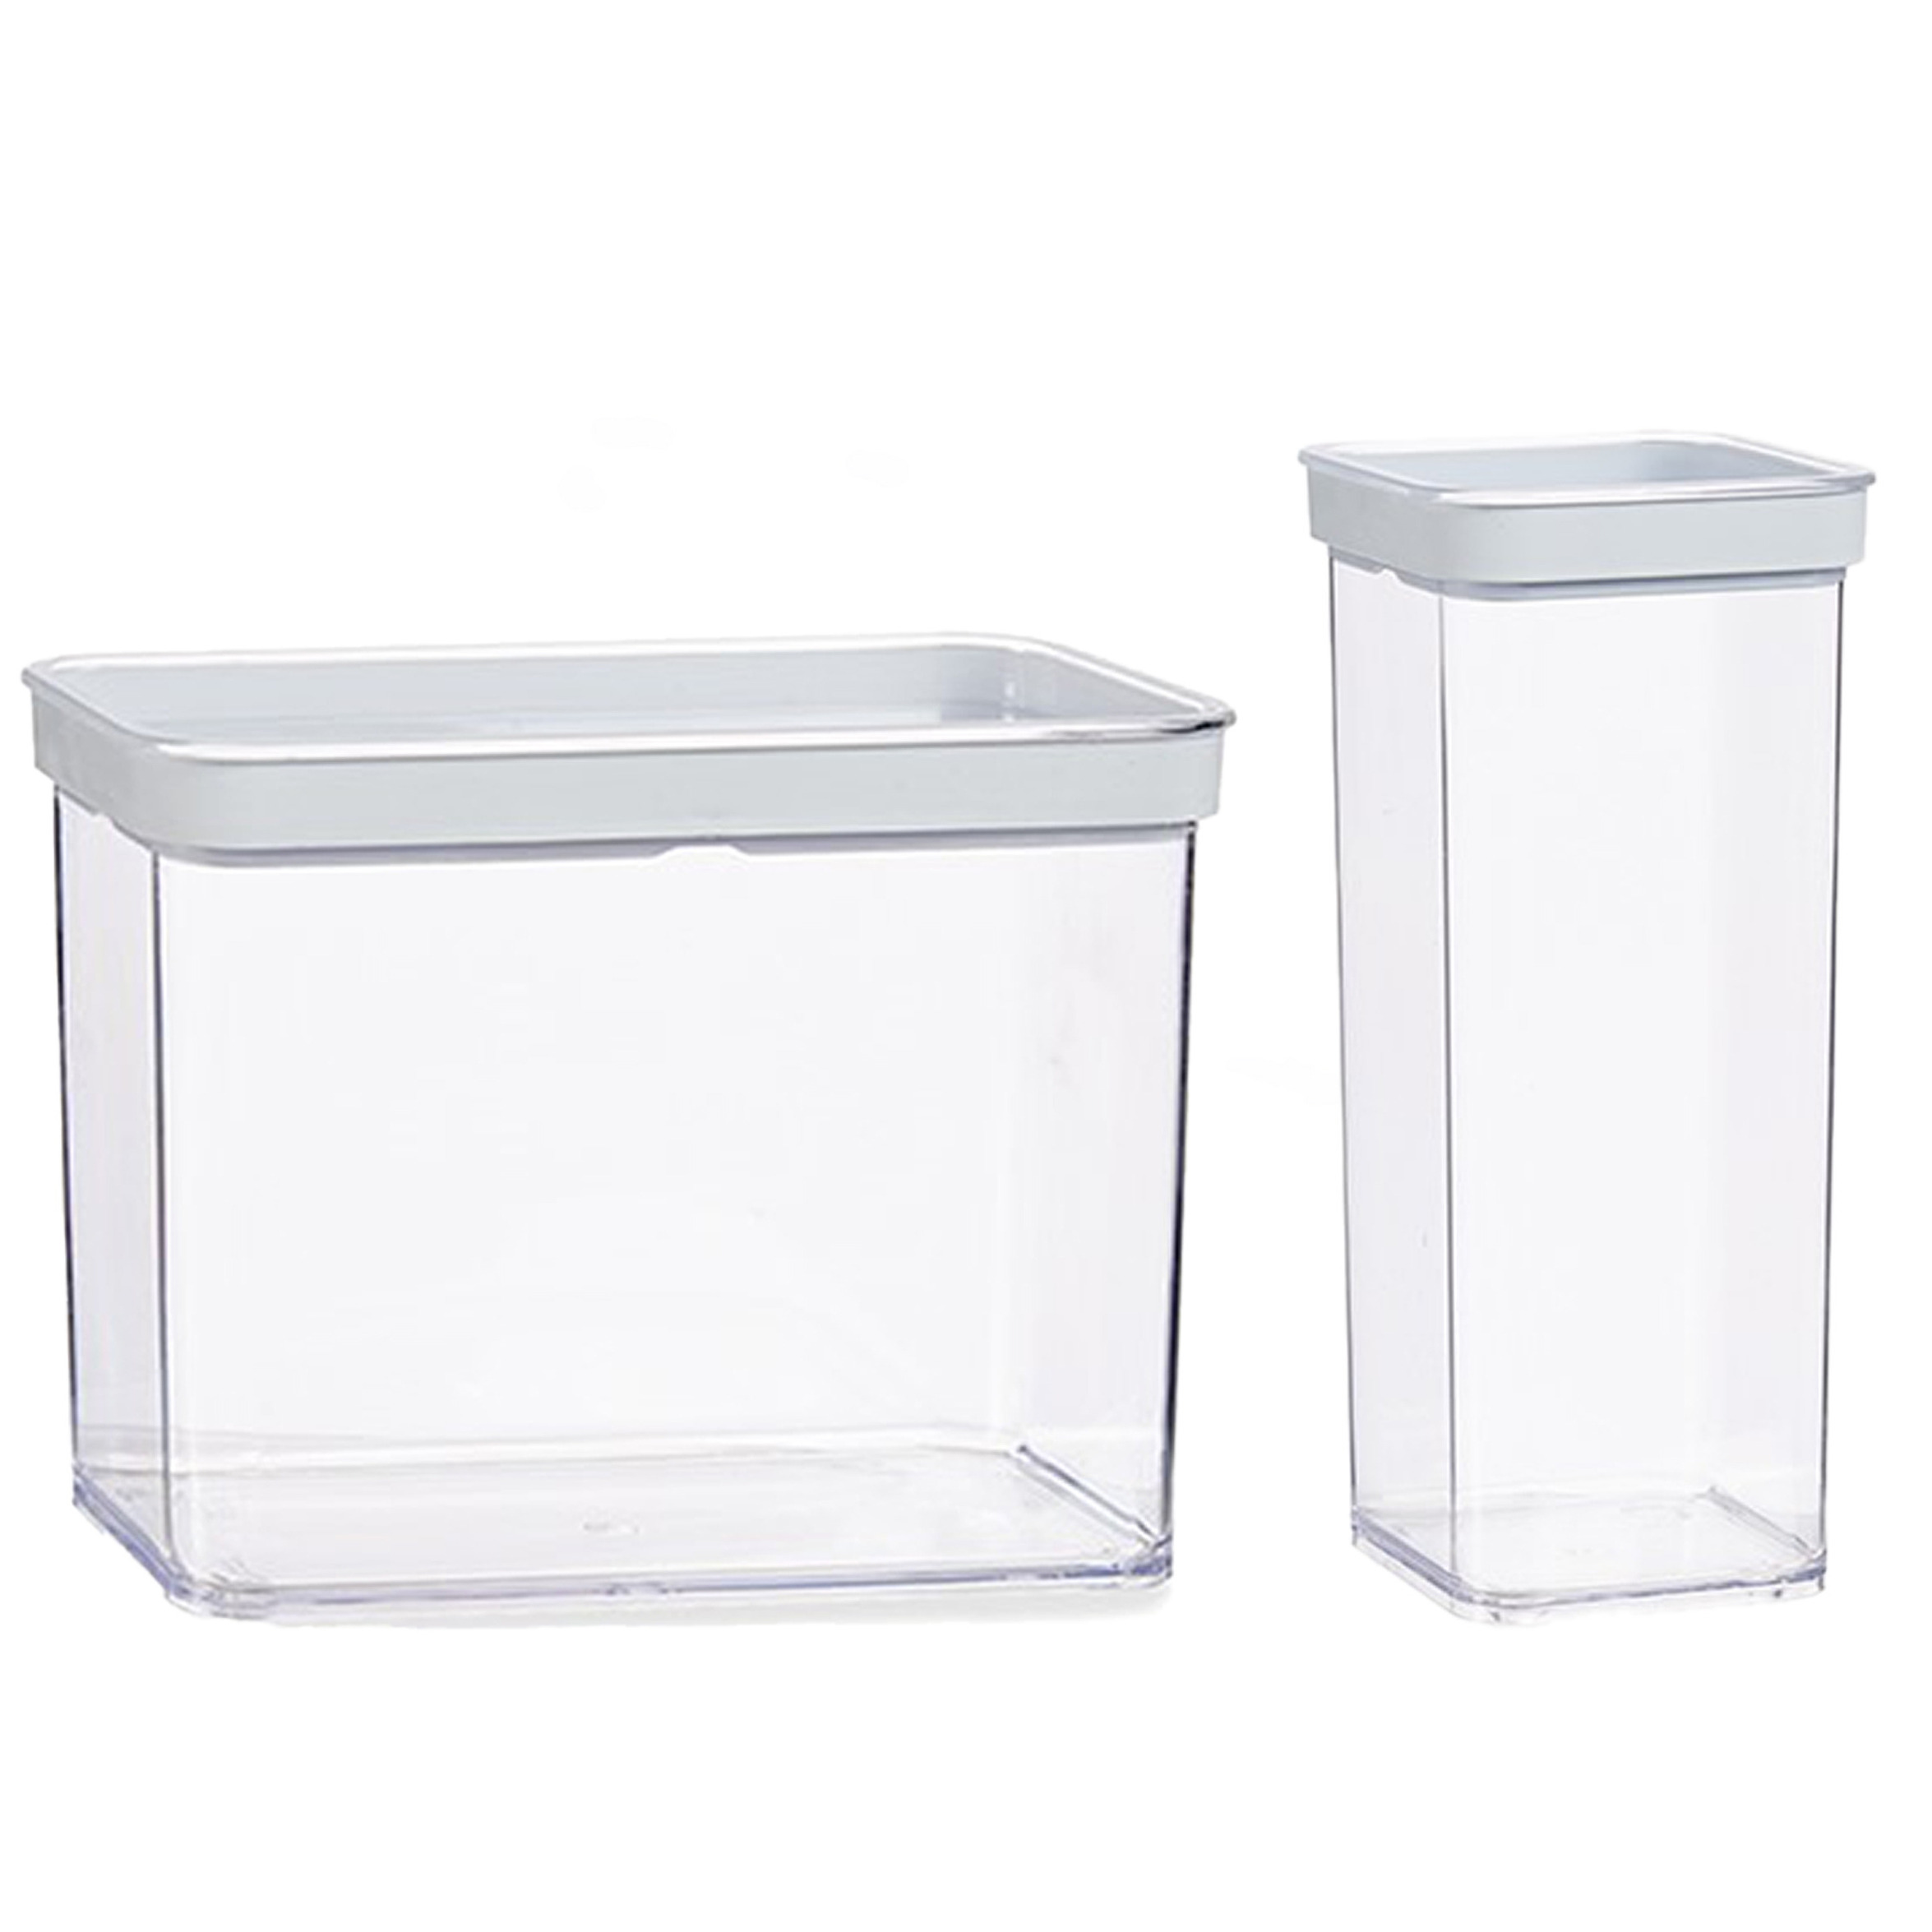 Gondol Plastics 4x stuks keuken voorraad potten/bakjes set met deksel 2.2 en 1.5 liter -